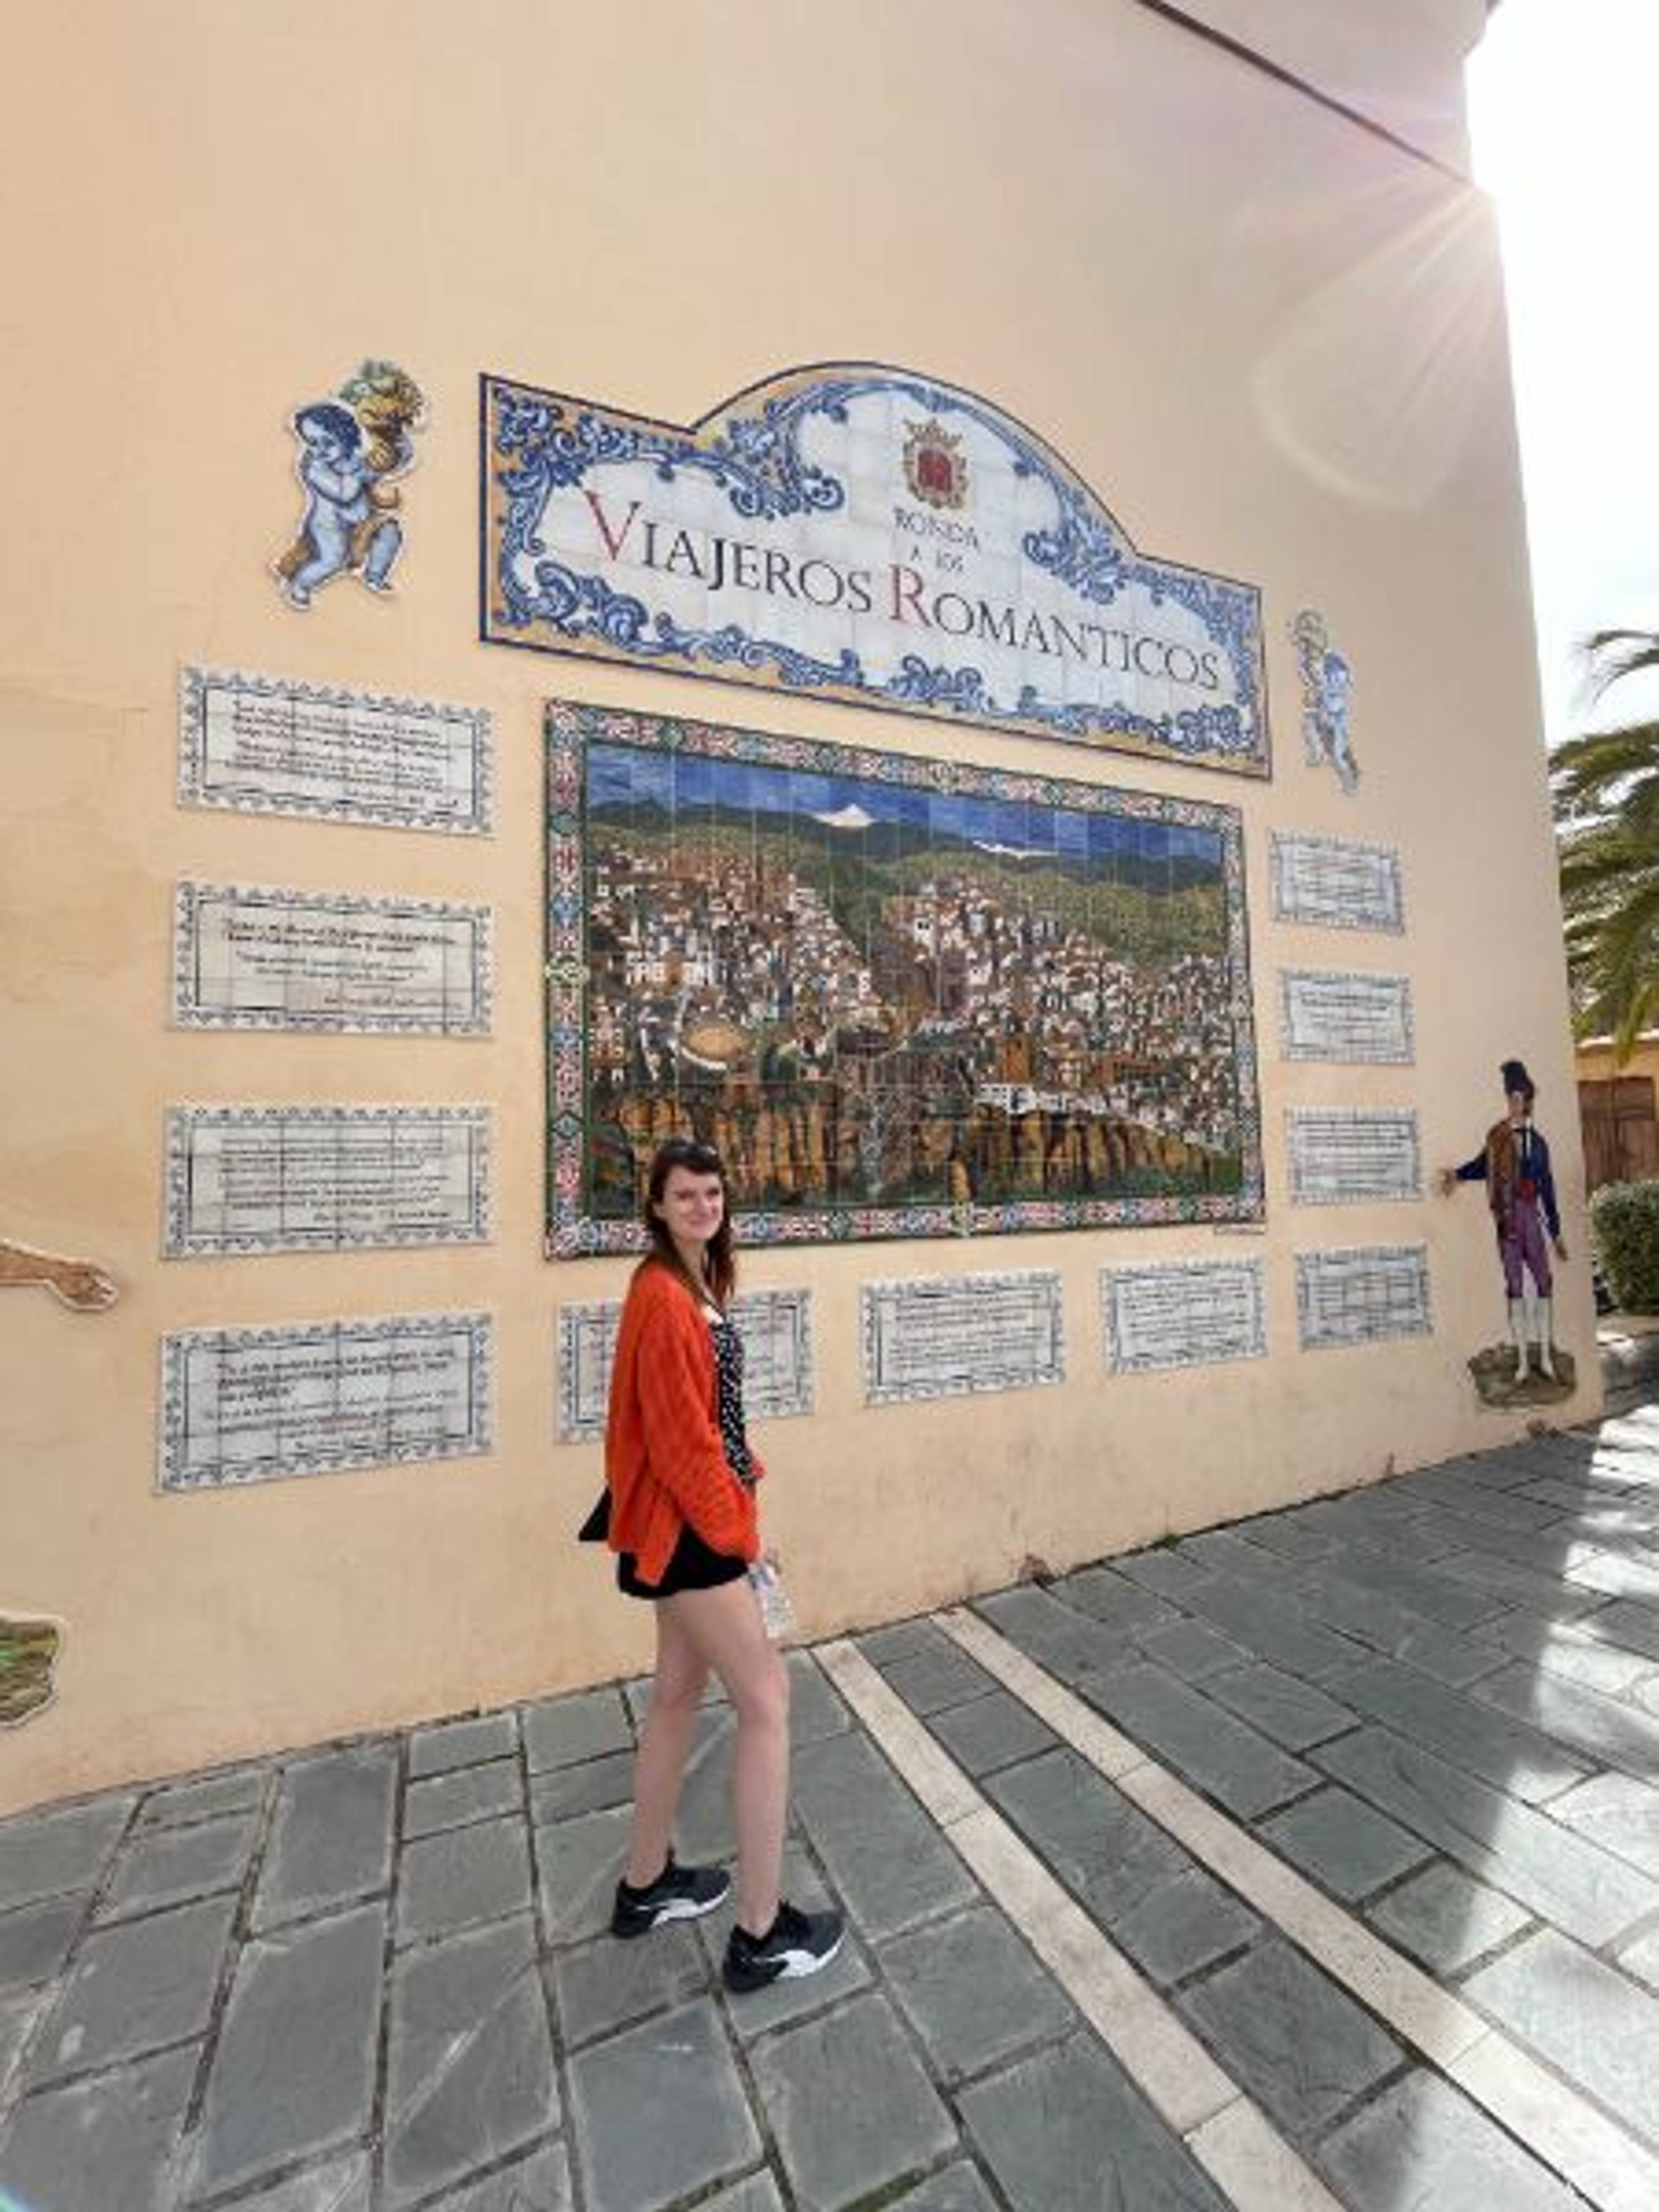 Dziewczyna pozująca przed mozaiką przedstawiającą miasto ronda i napis "Viajeros Romanticos", czyli romantyczne podróże. 